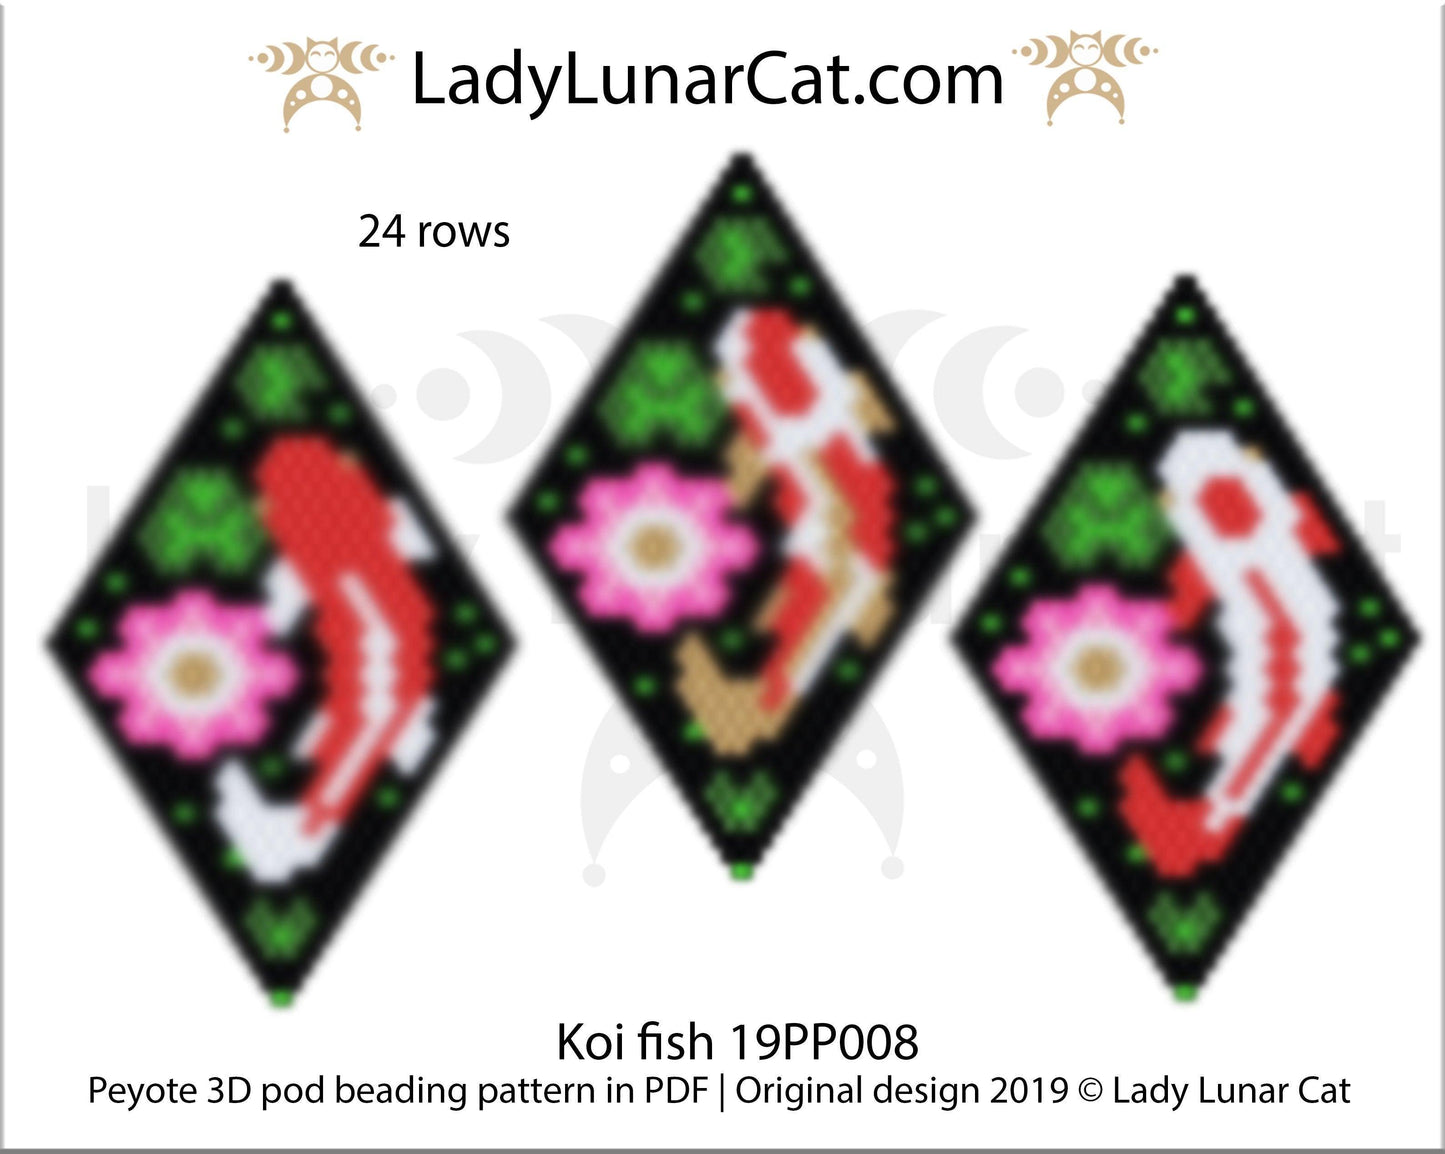 Peyote pod patterns for beading Koi fish 19PP008 LadyLunarCat